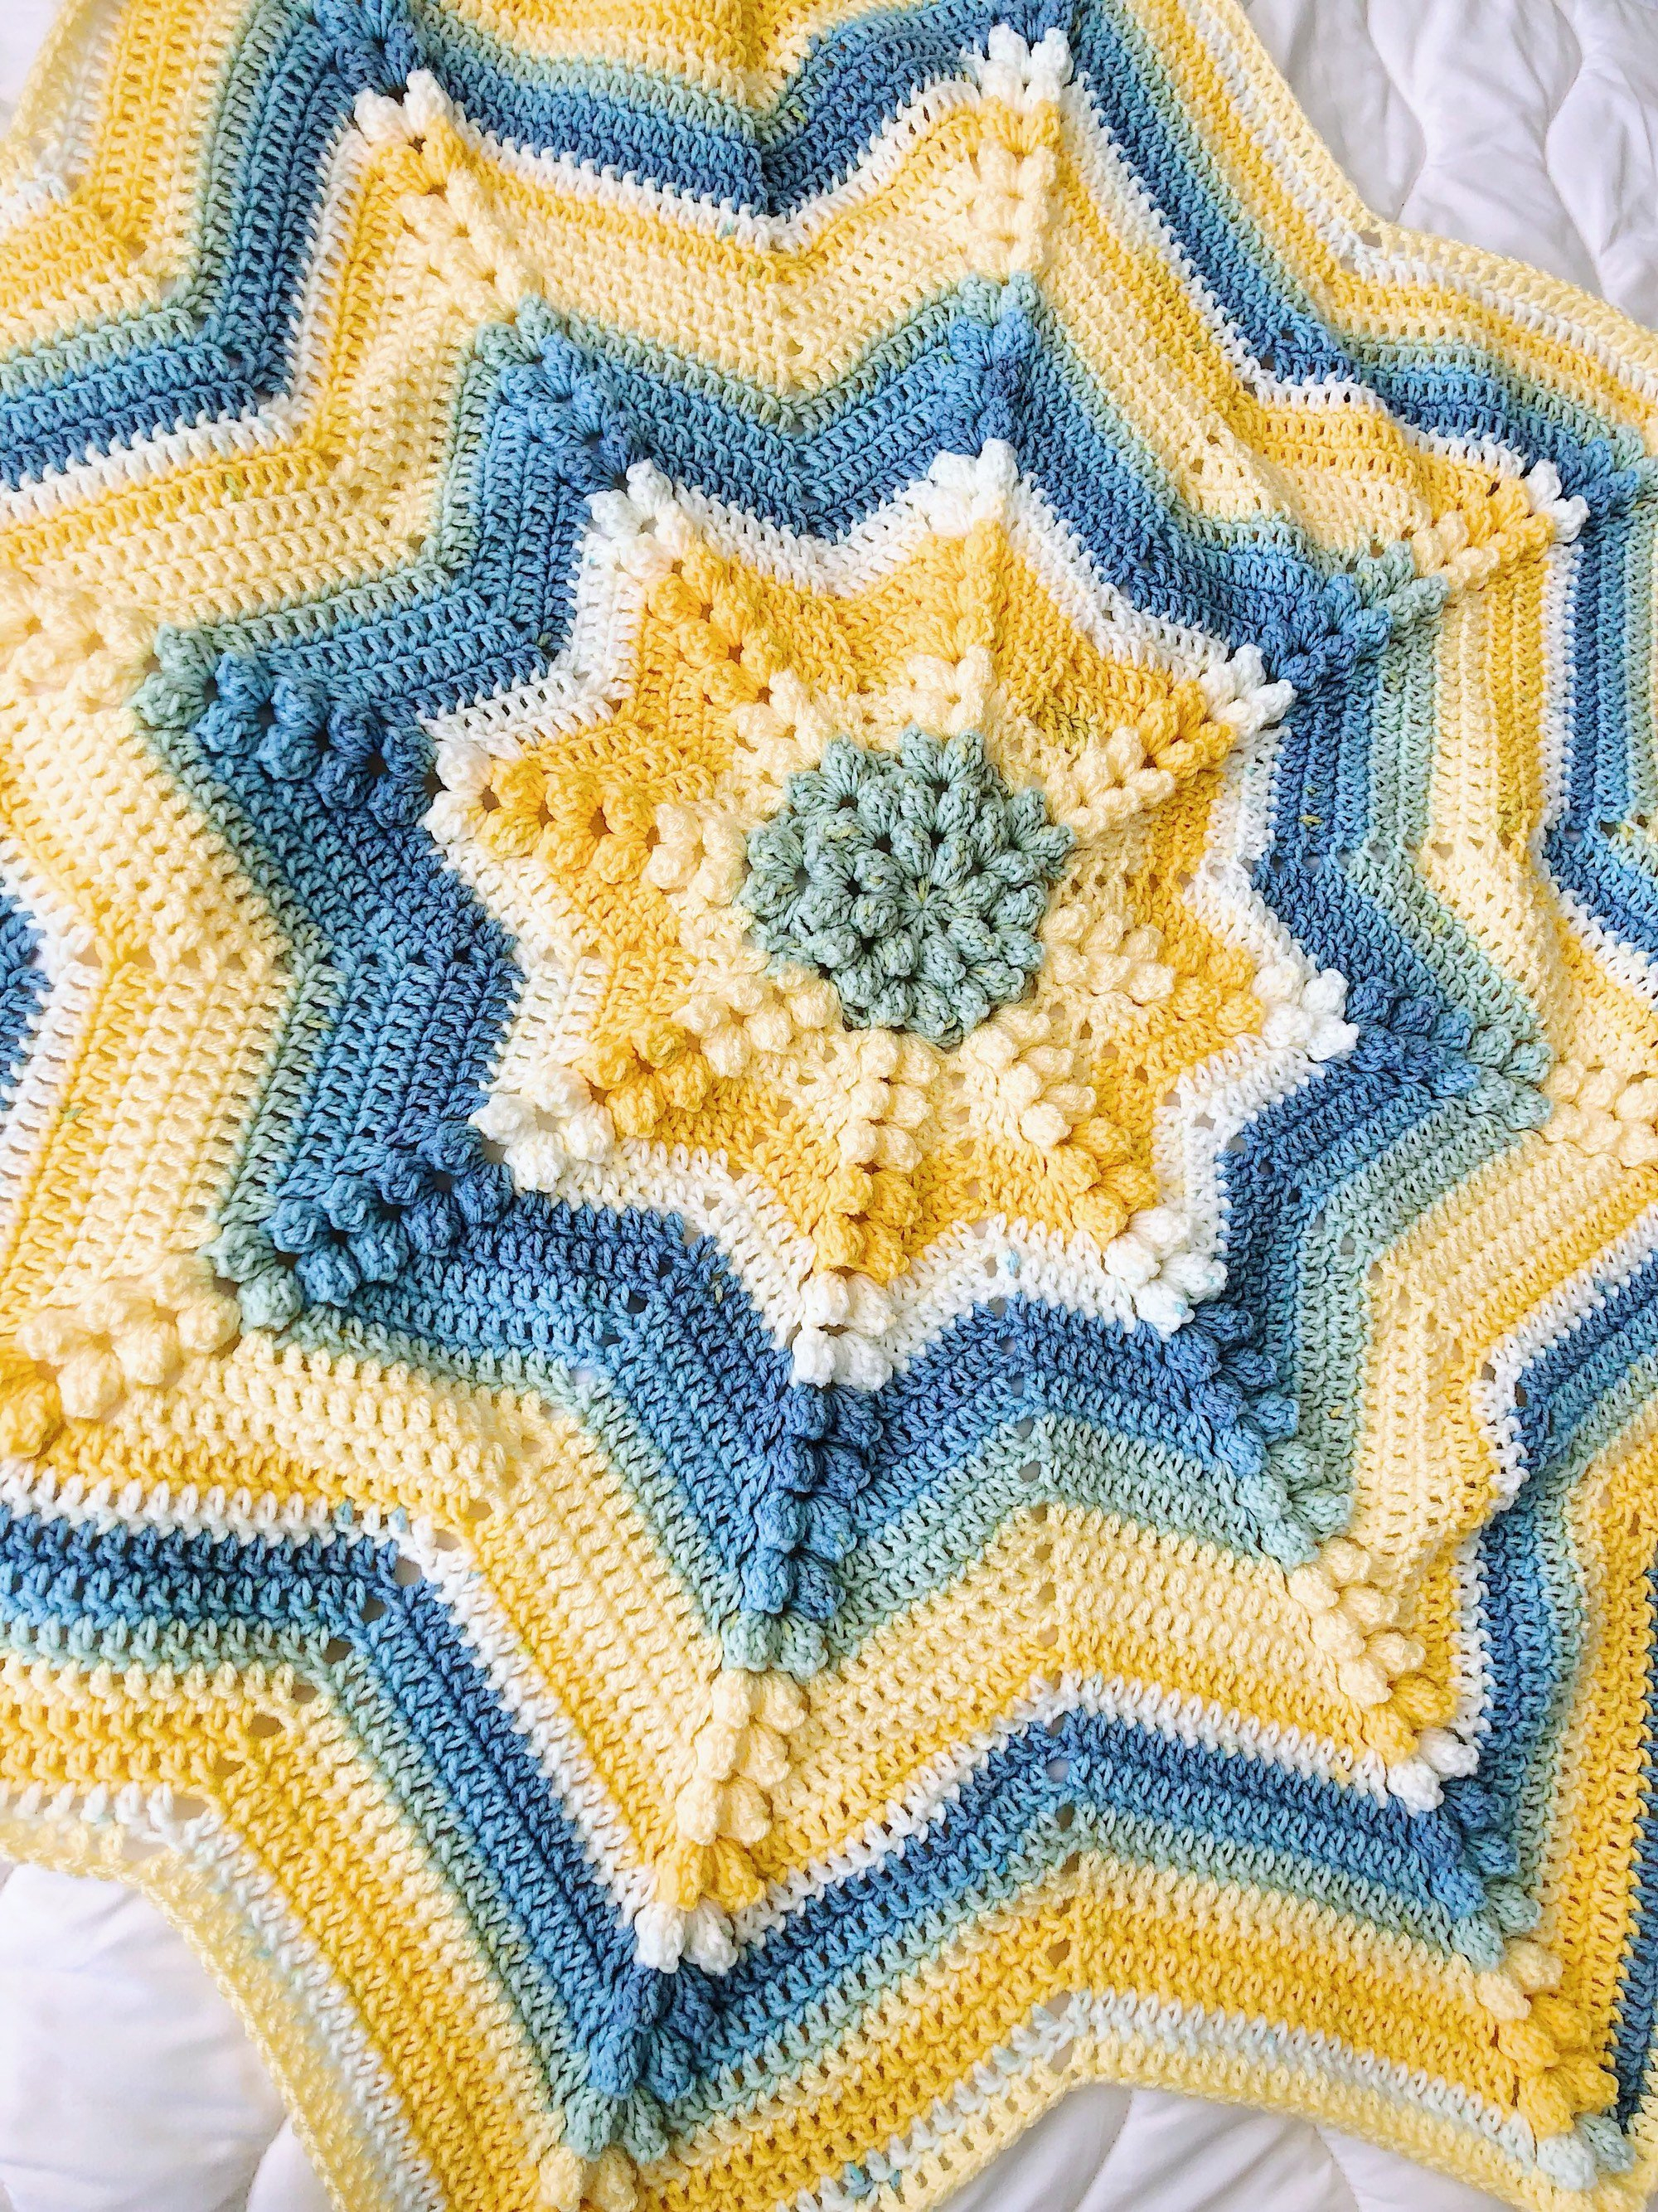 Star Baby Blanket Crochet Pattern Crochet Ba Blanket Star Ba Blanket Blue And Yellow Knit Etsy